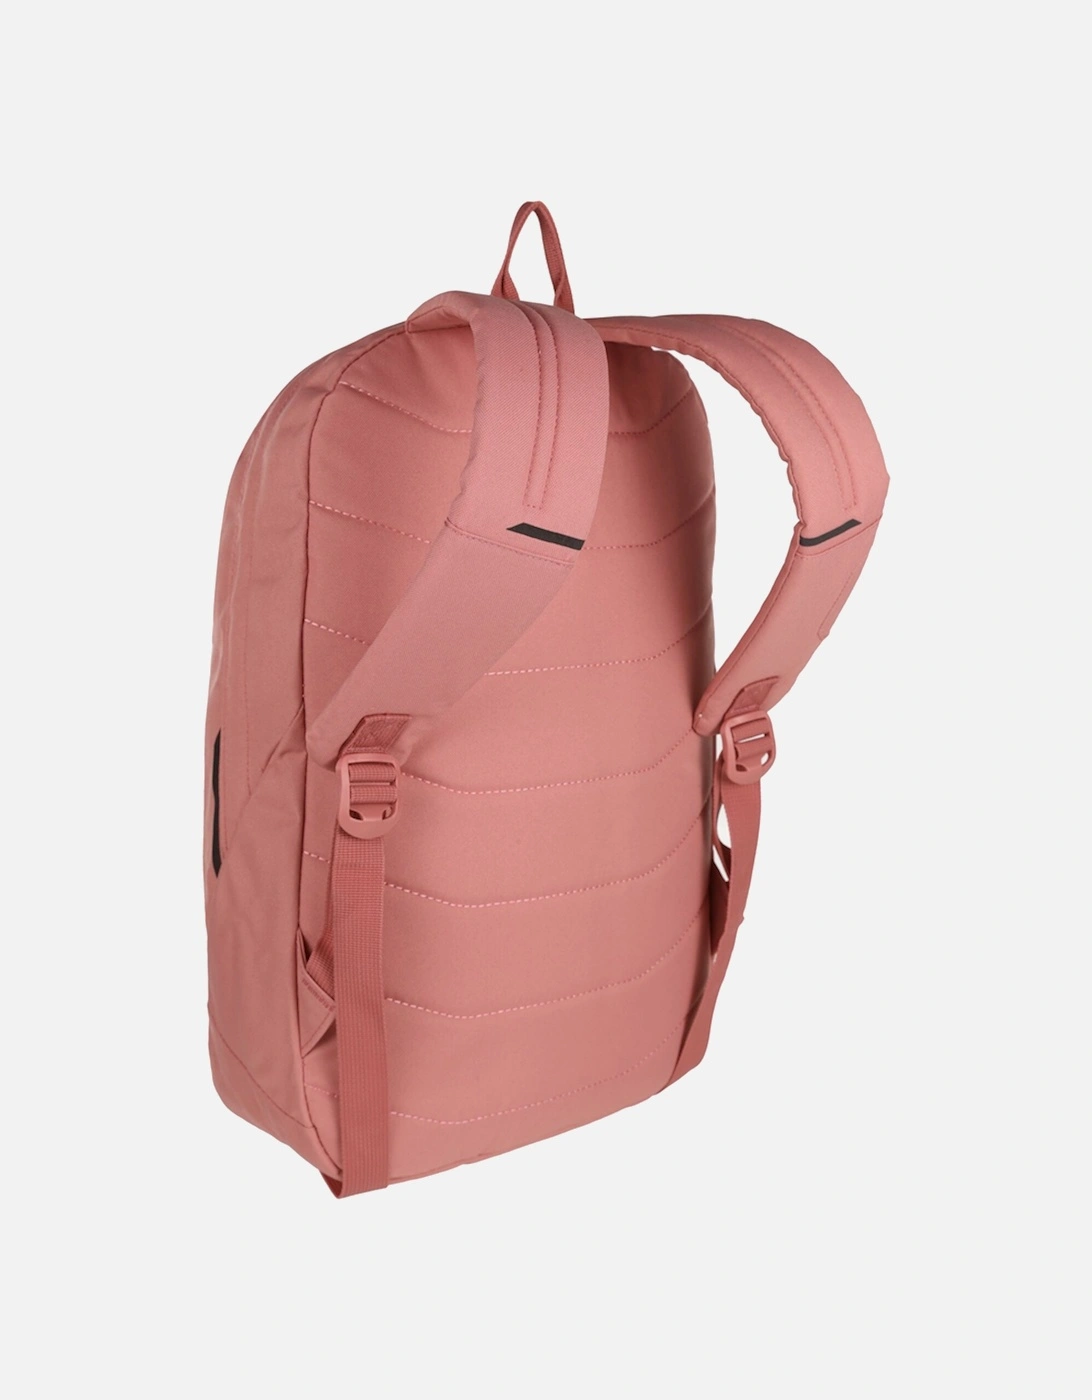 Shilton 18 Litre Adjustable Rucksack Backpack Bag